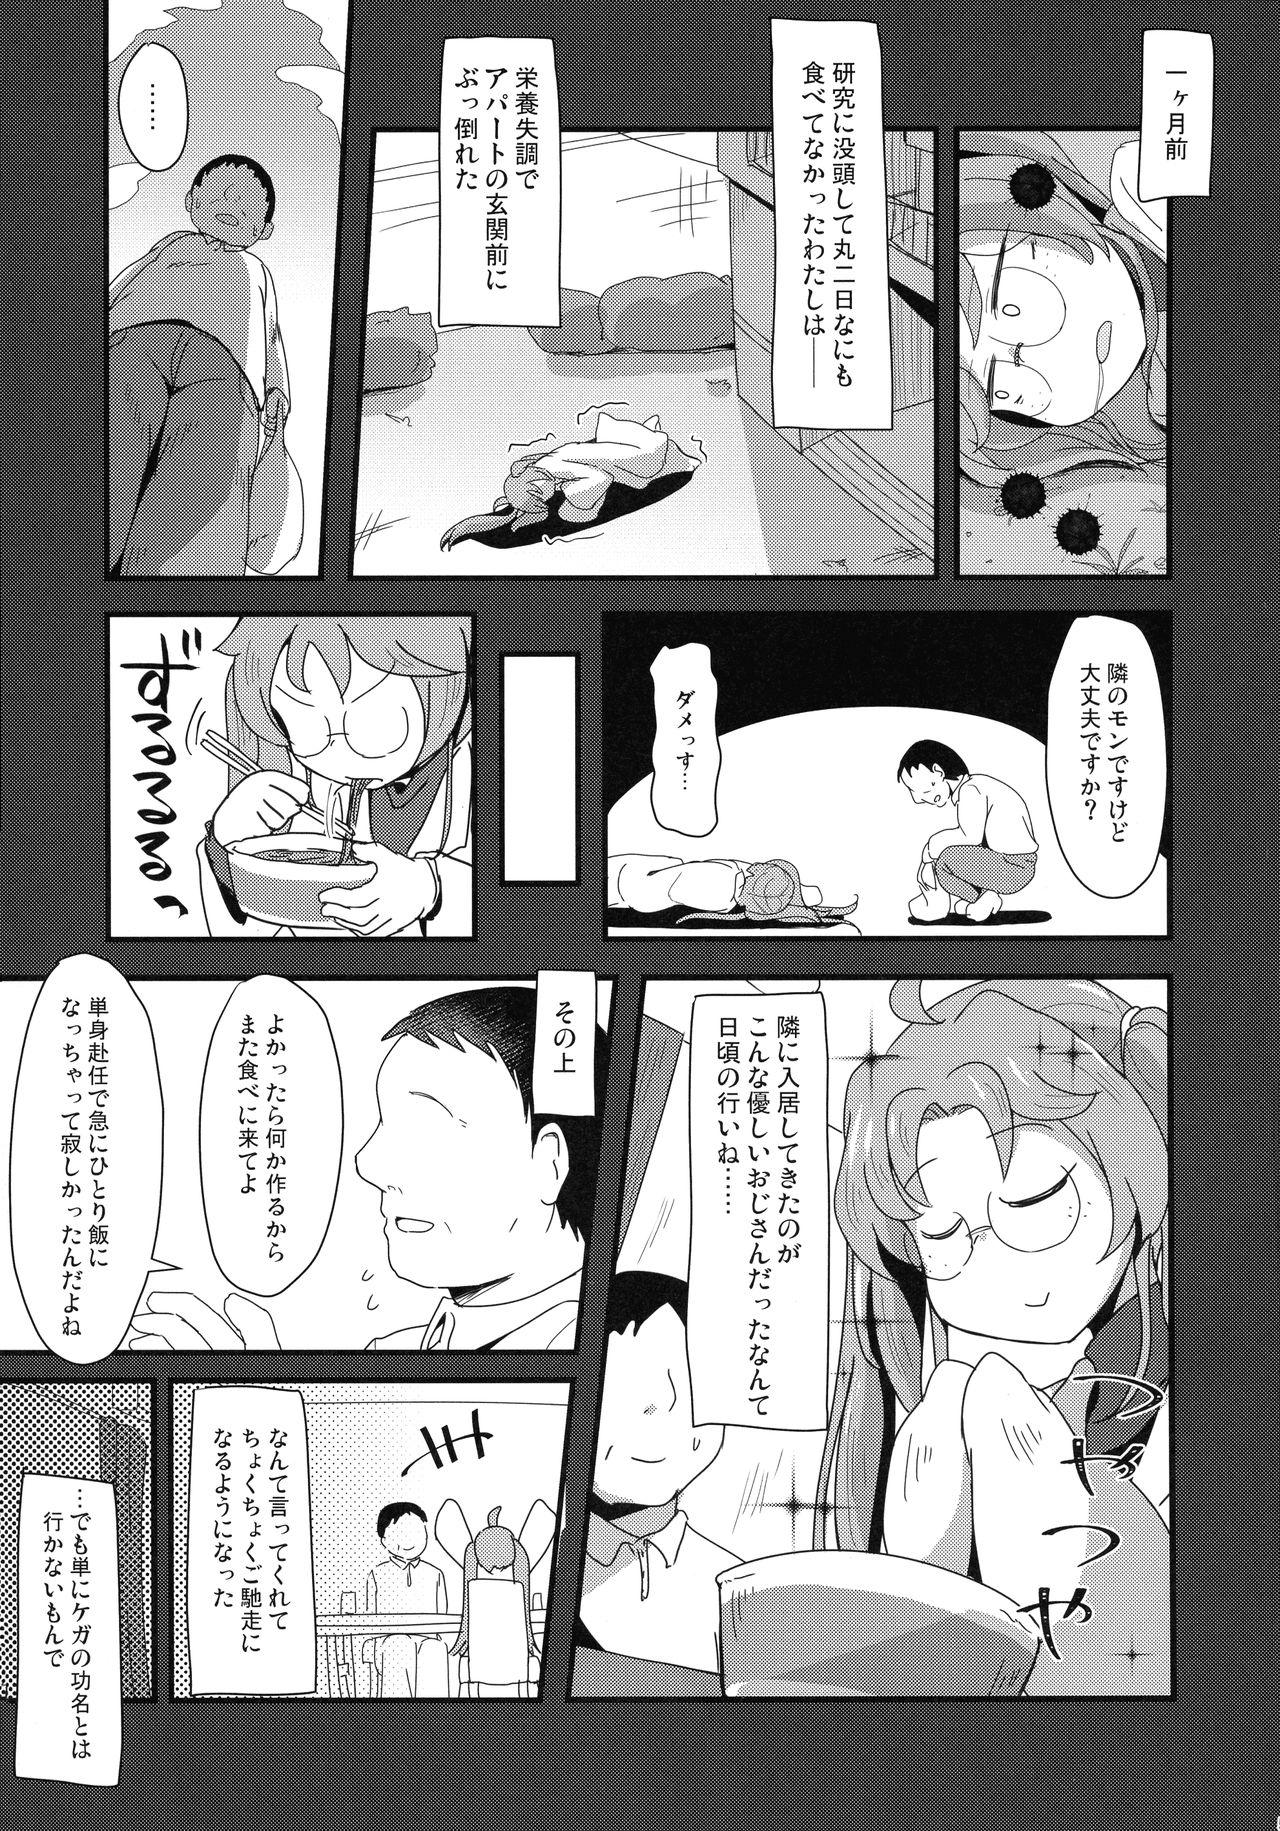 Boobs tonaribeya no yasasii ojisan - Sengoku collection Spoon - Page 5